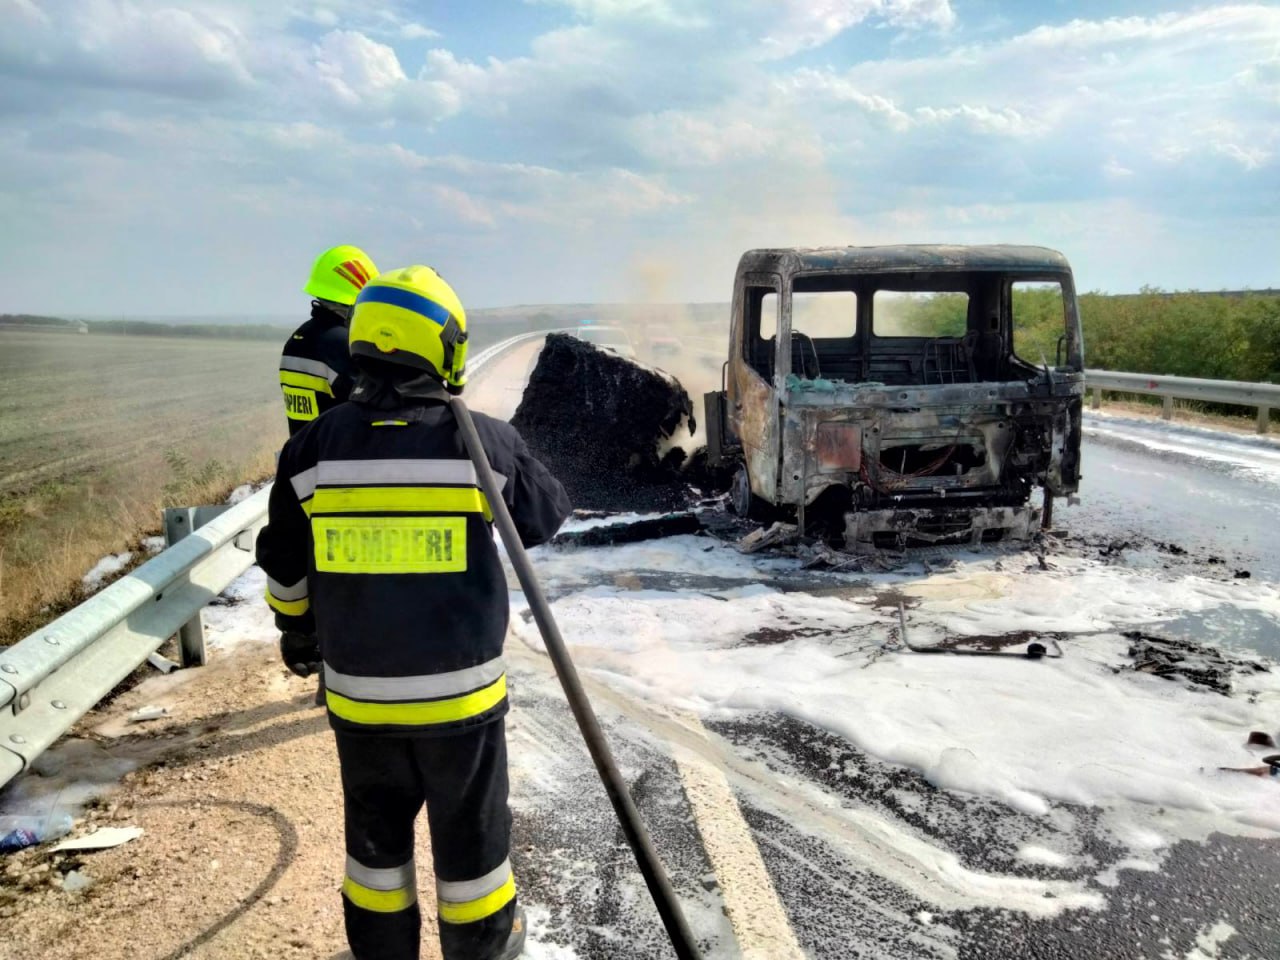 (ФОТО) На трассе в Комрате загорелся грузовик. На место прибыли два пожарных расчета